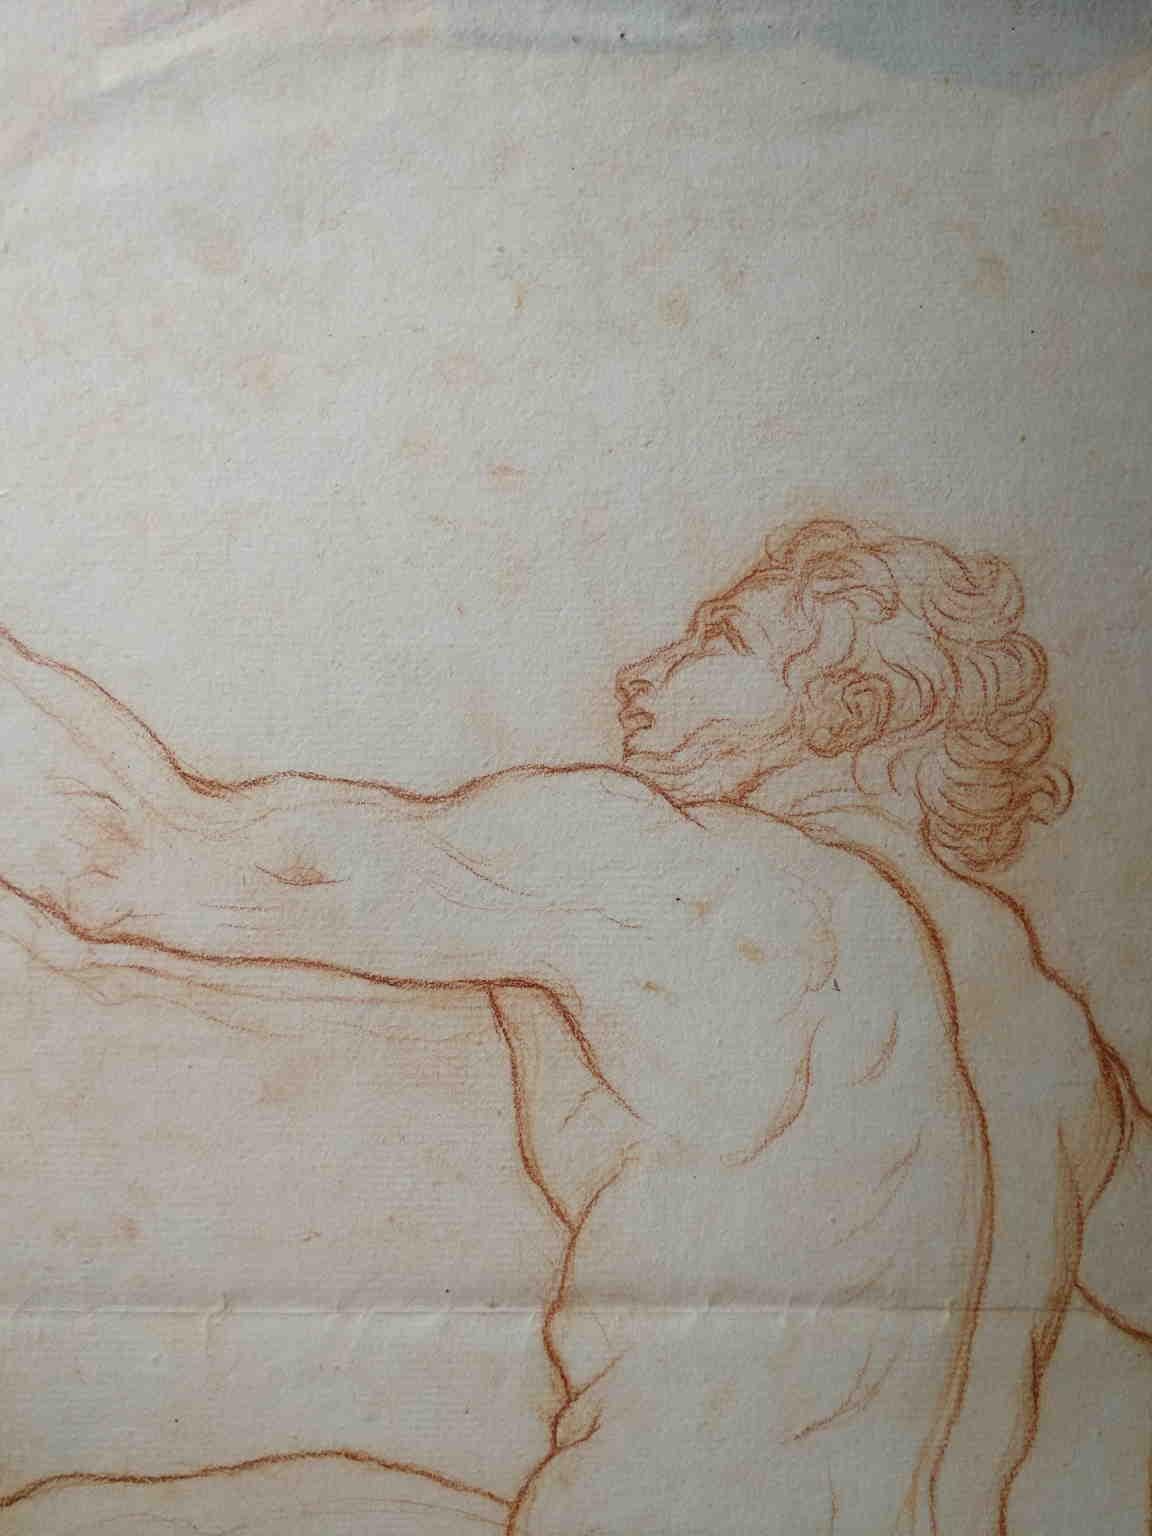 Disegno toscano figurativo nudo maschile a sanguigna su carta del XIX secolo - Art by Bernardino Orsetti